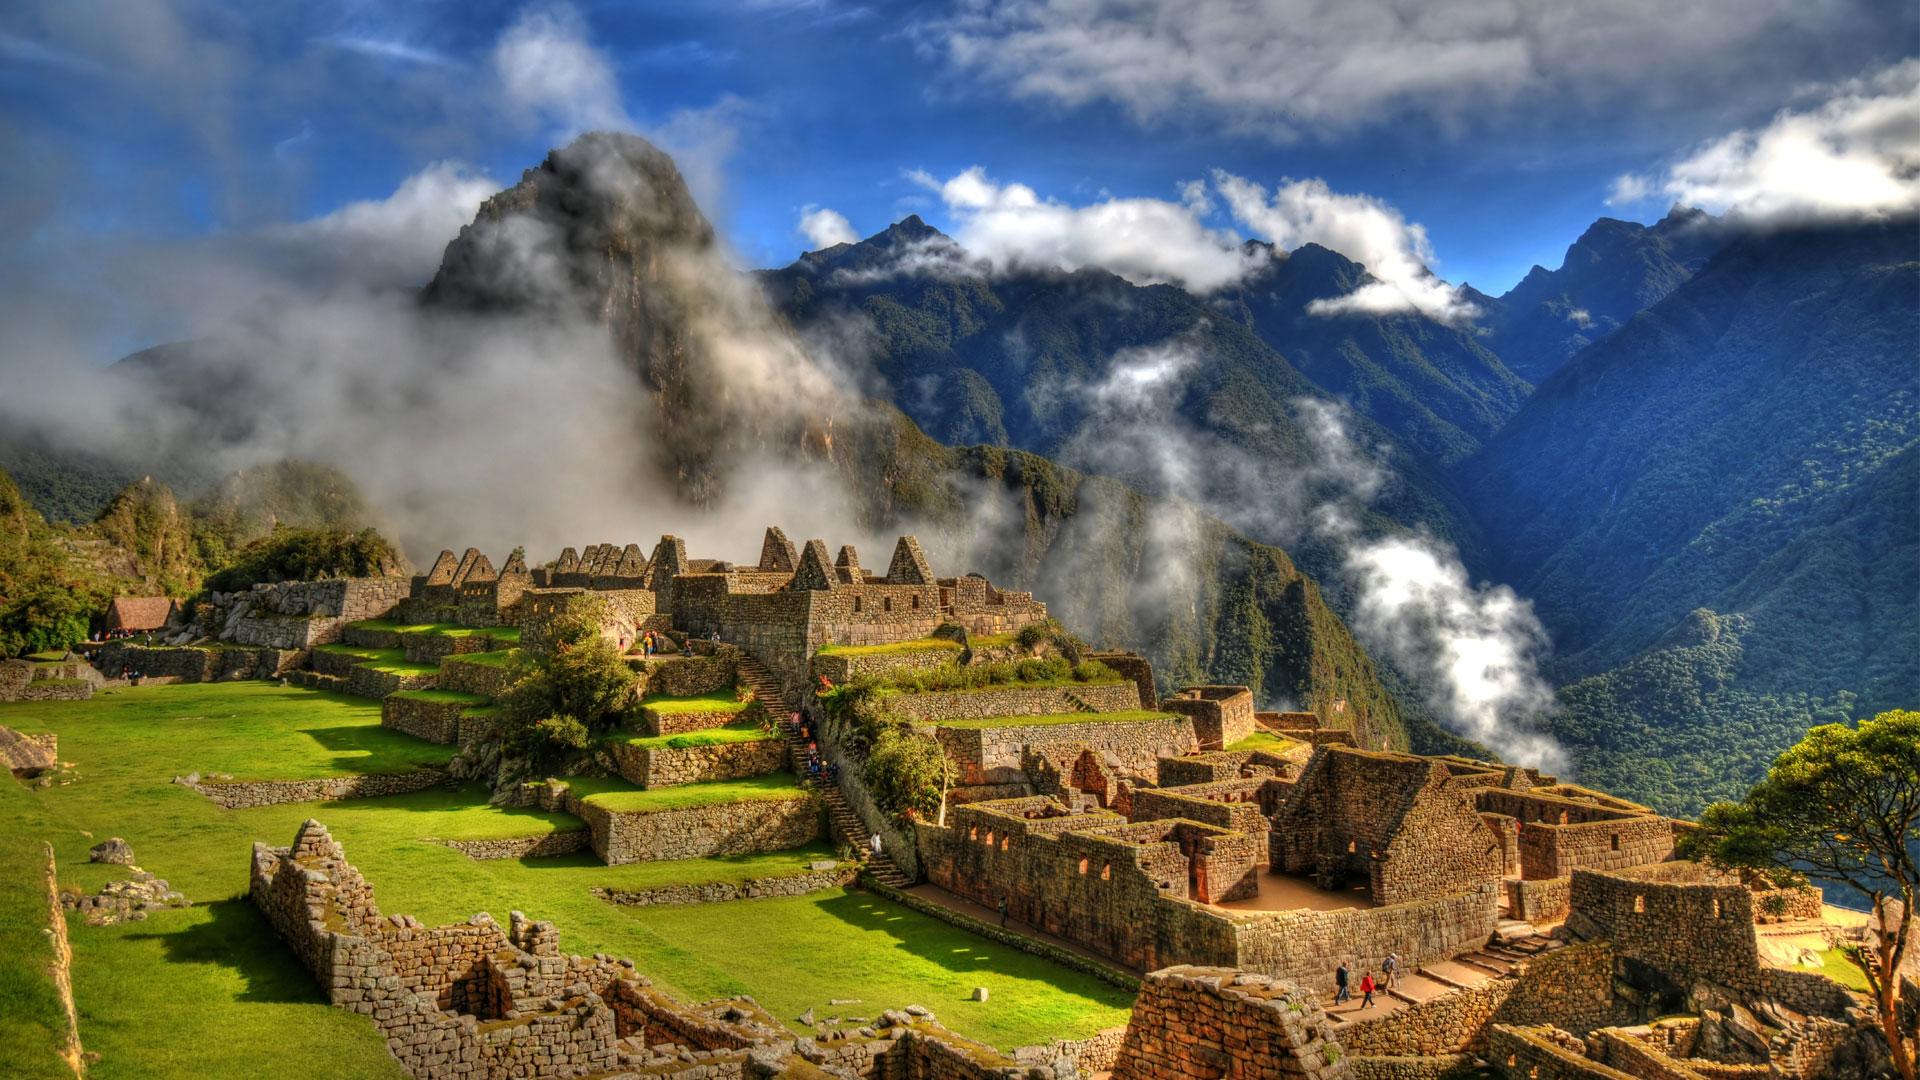 Maria Morton wallpaper, HD file. Machu Picchu, Peru